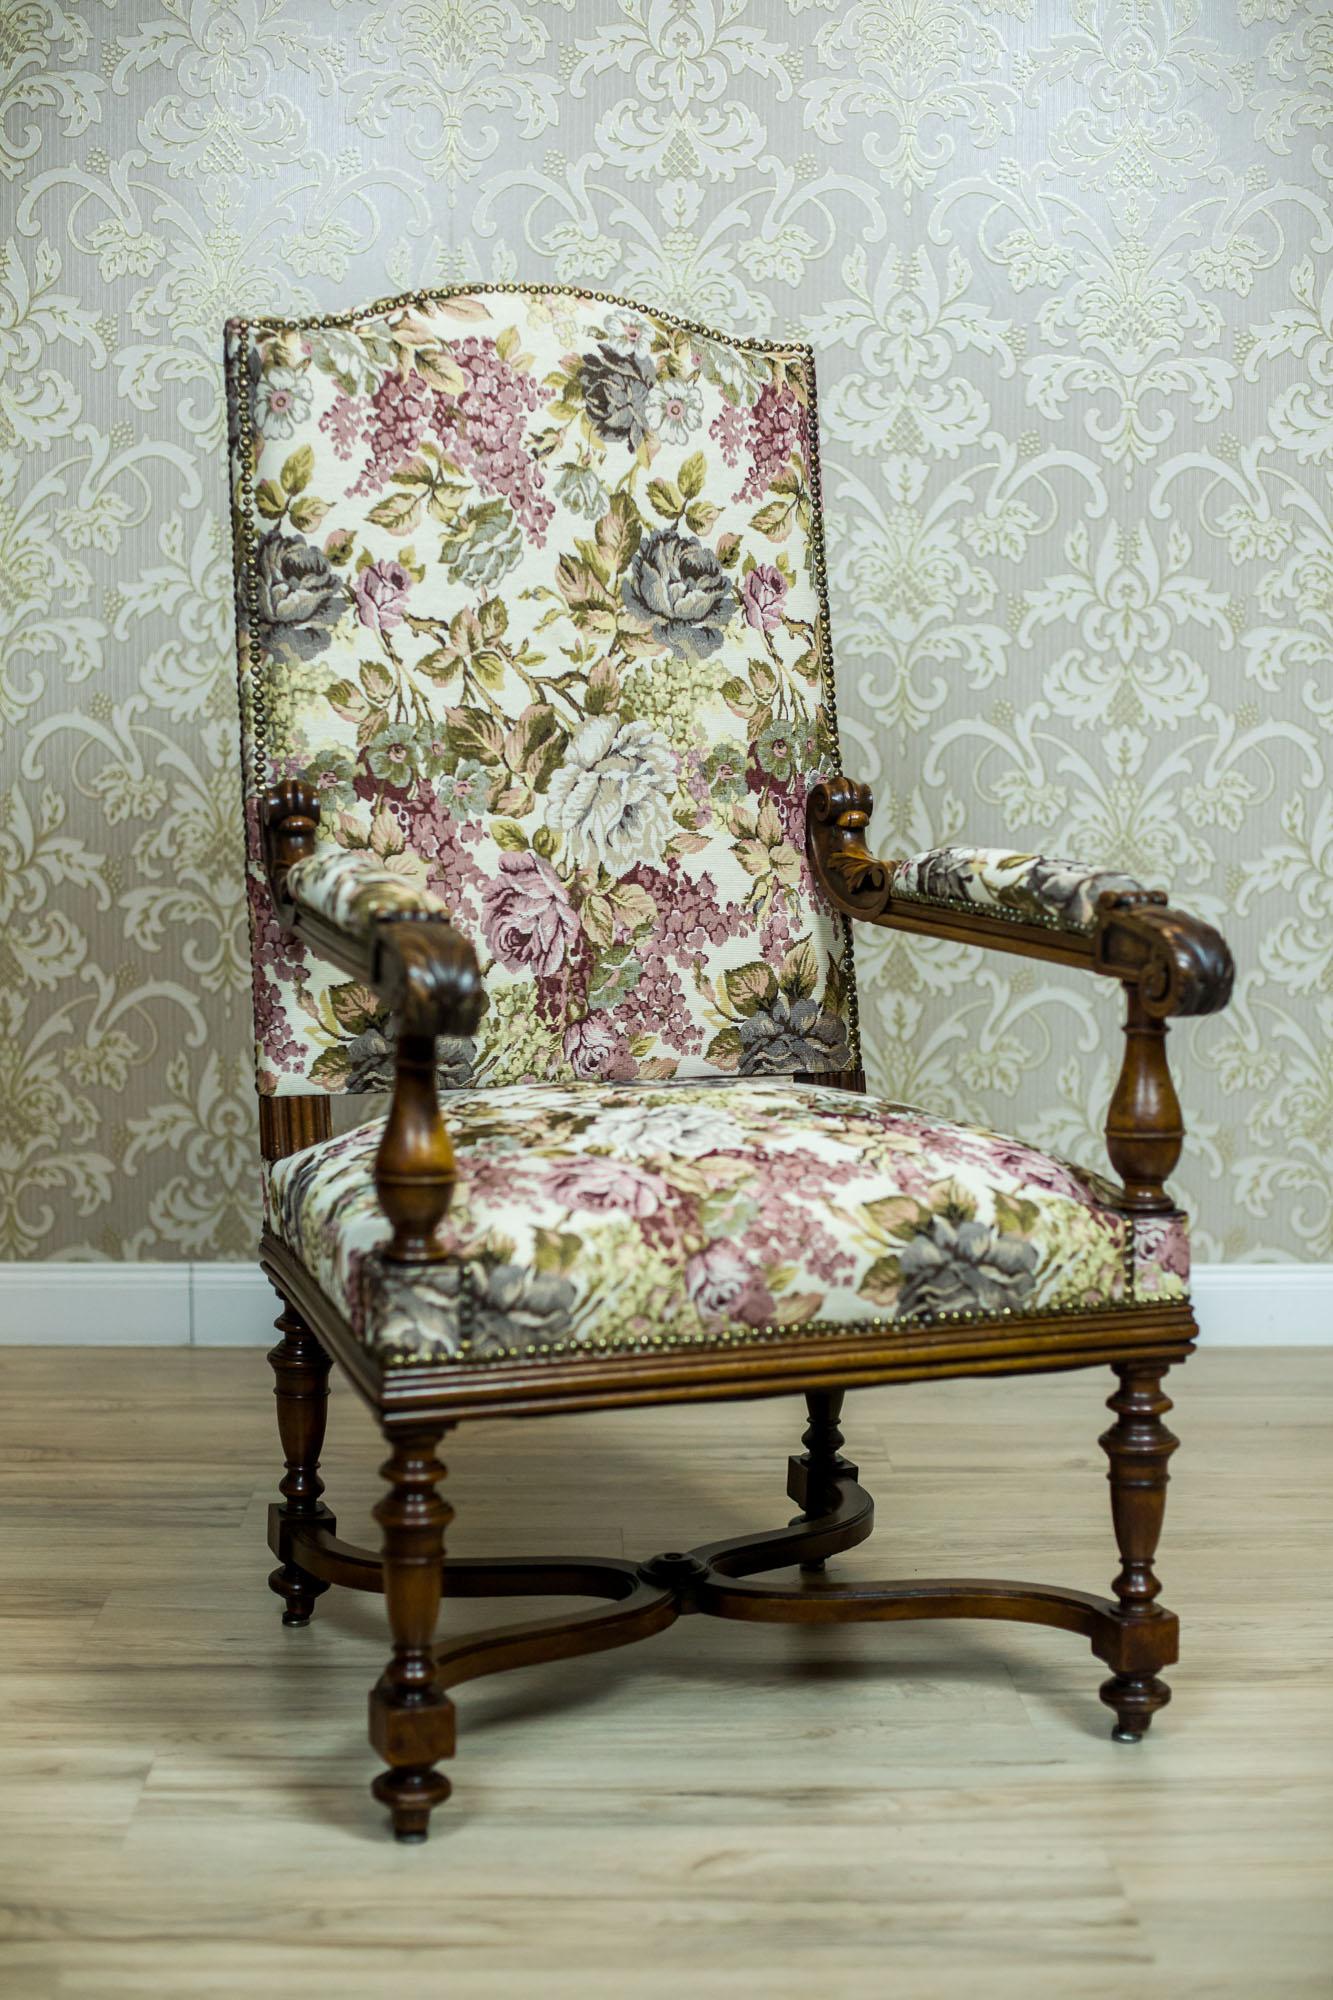 Fauteuil/trône en chêne français du tournant des 19e et 20e siècles avec tapisserie florale

Nous vous présentons ce grand fauteuil français en bois de chêne, avec une assise moelleuse et un dossier haut.
Les pieds tournés du fauteuil sont reliés à